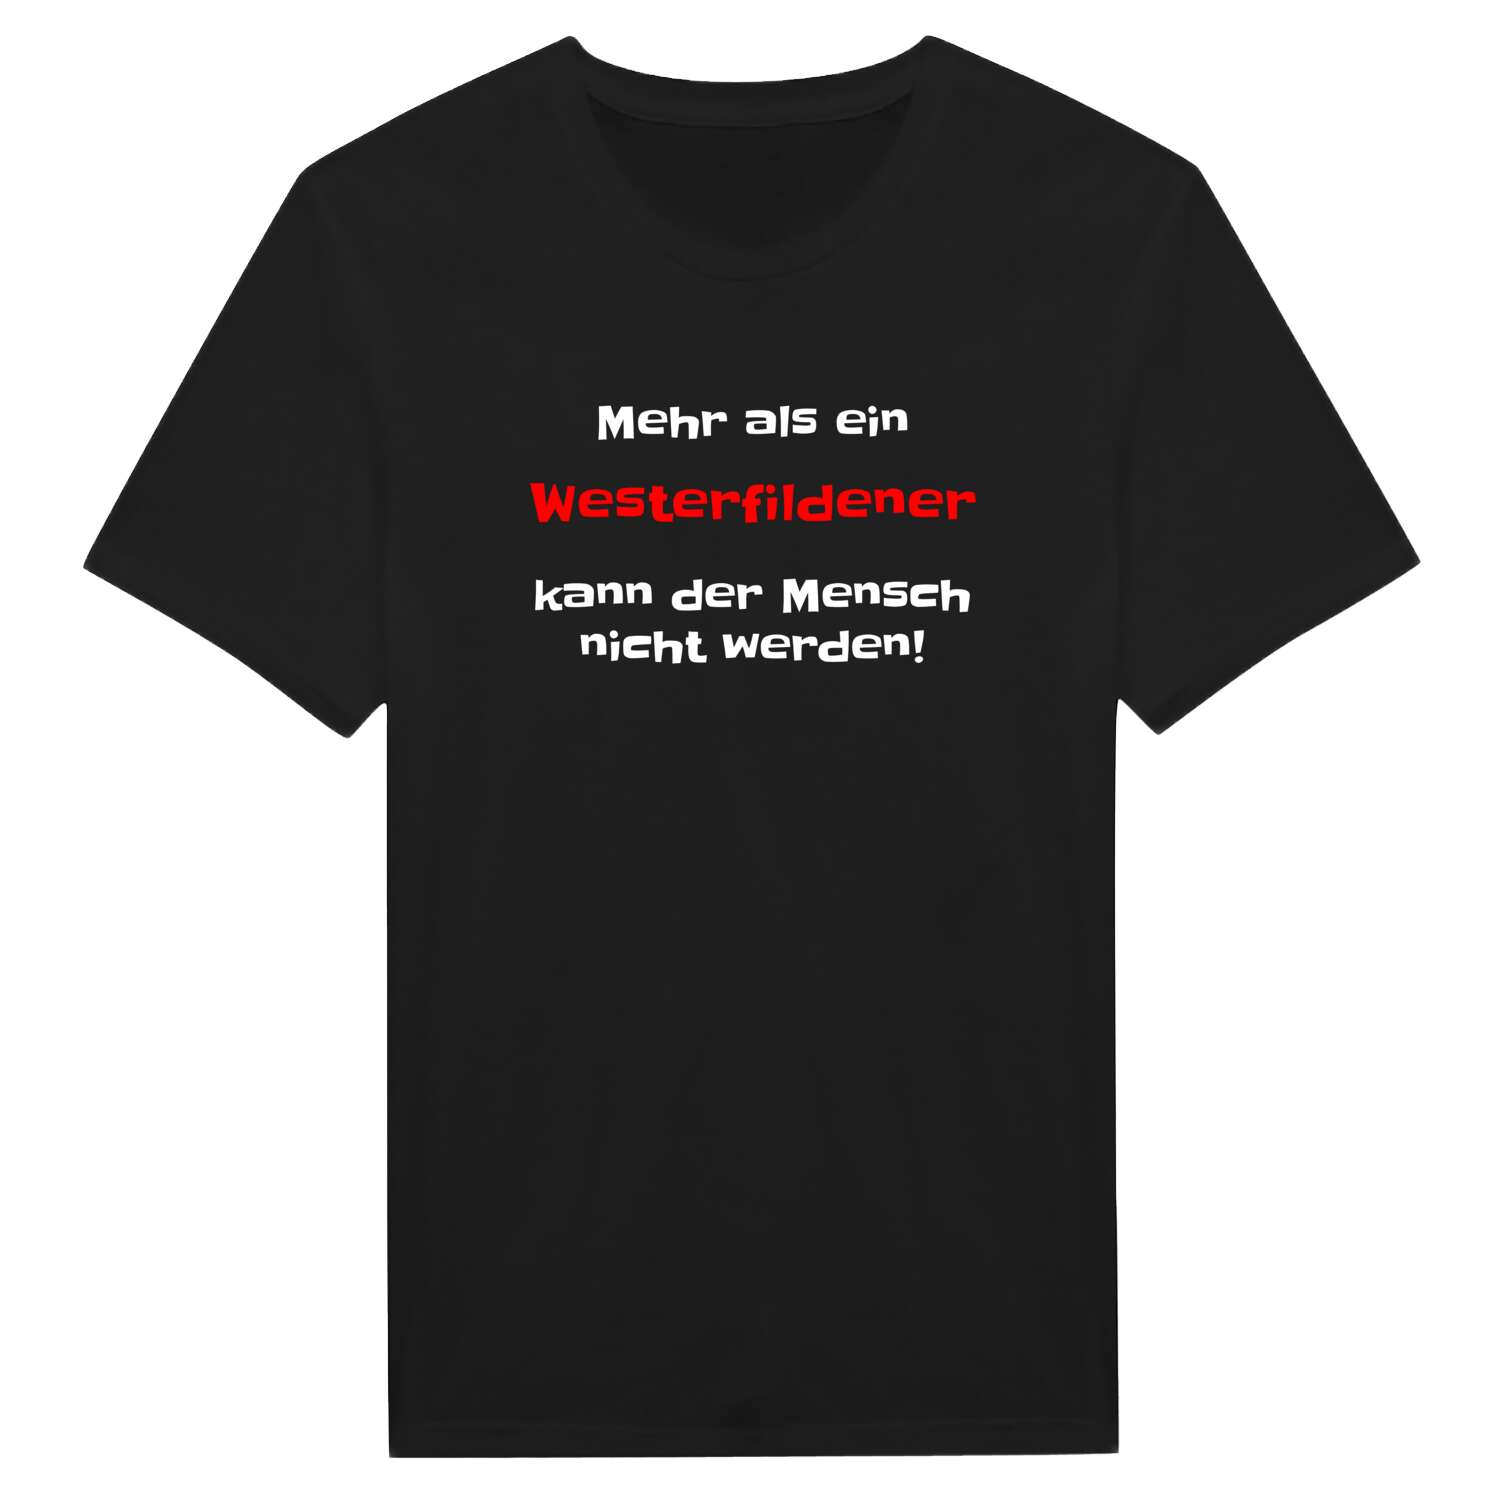 Westerfilde T-Shirt »Mehr als ein«